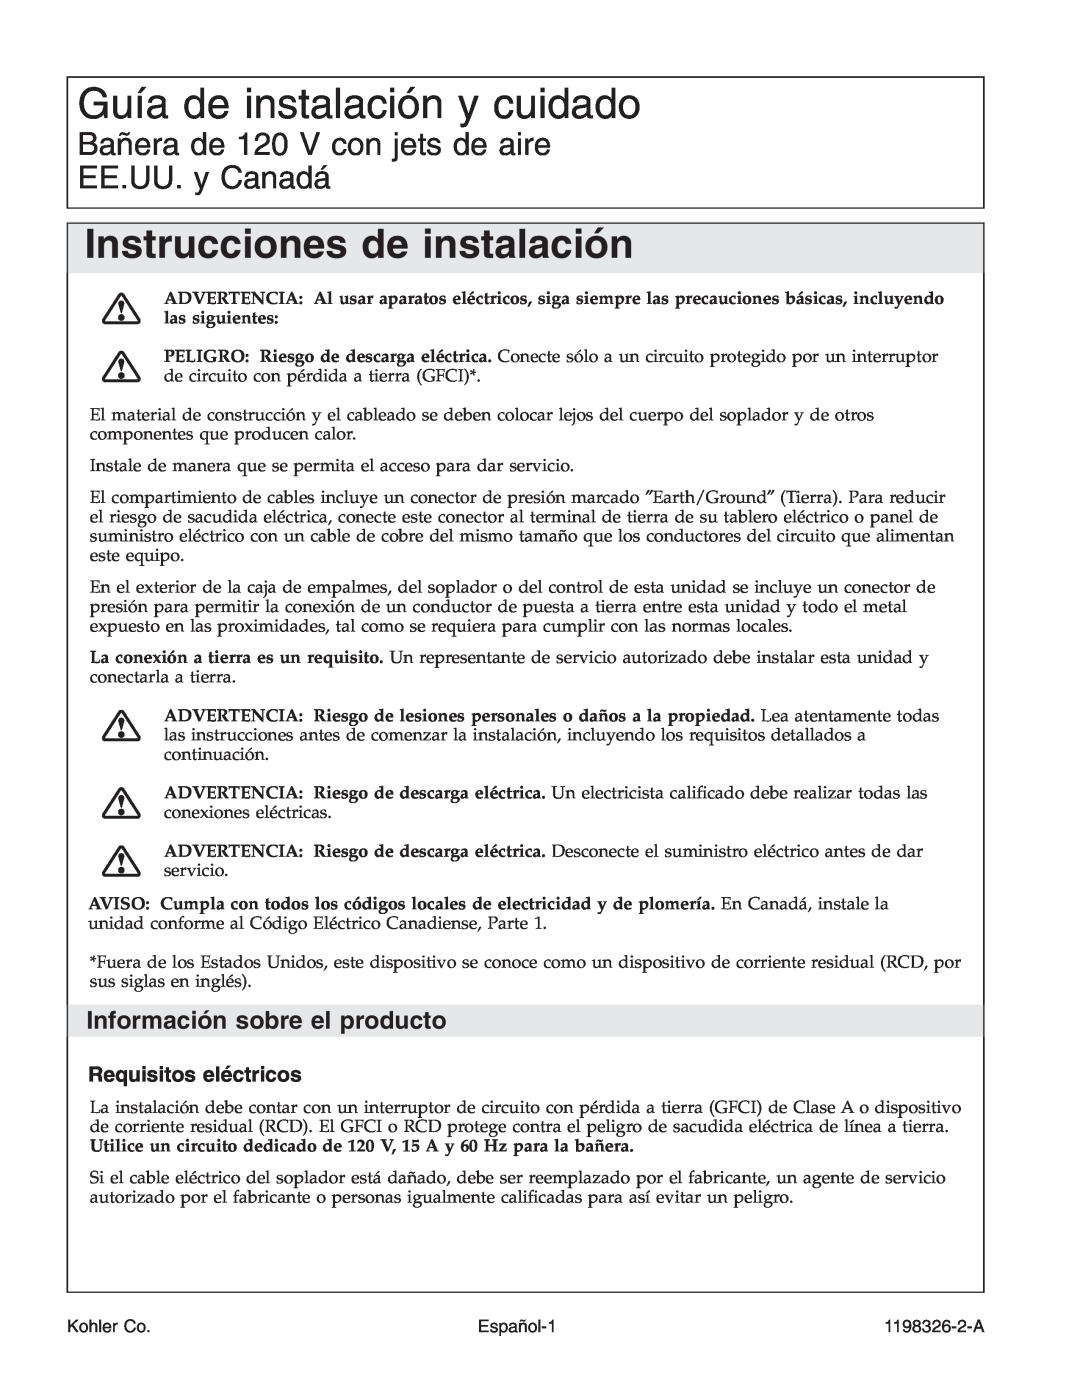 Kohler 1198326-2-A Guía de instalación y cuidado, Instrucciones de instalación, Información sobre el producto, Español-1 